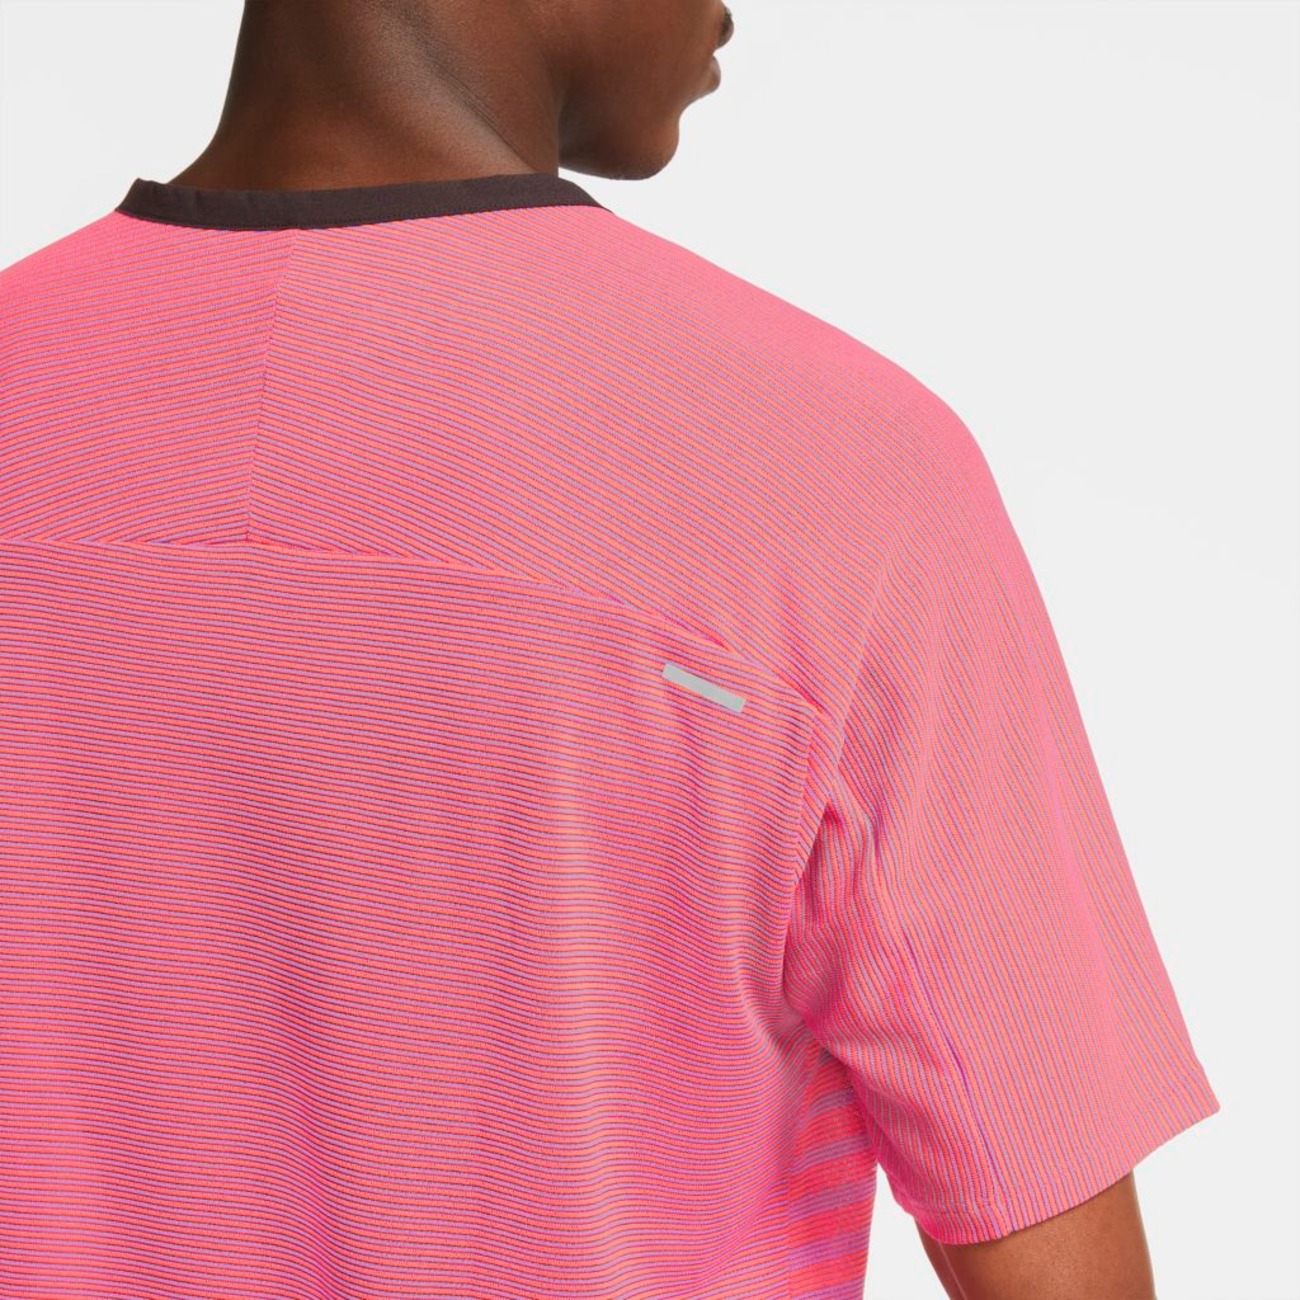 Camiseta Nike TechKnit Future Fast Masculina - Foto 5